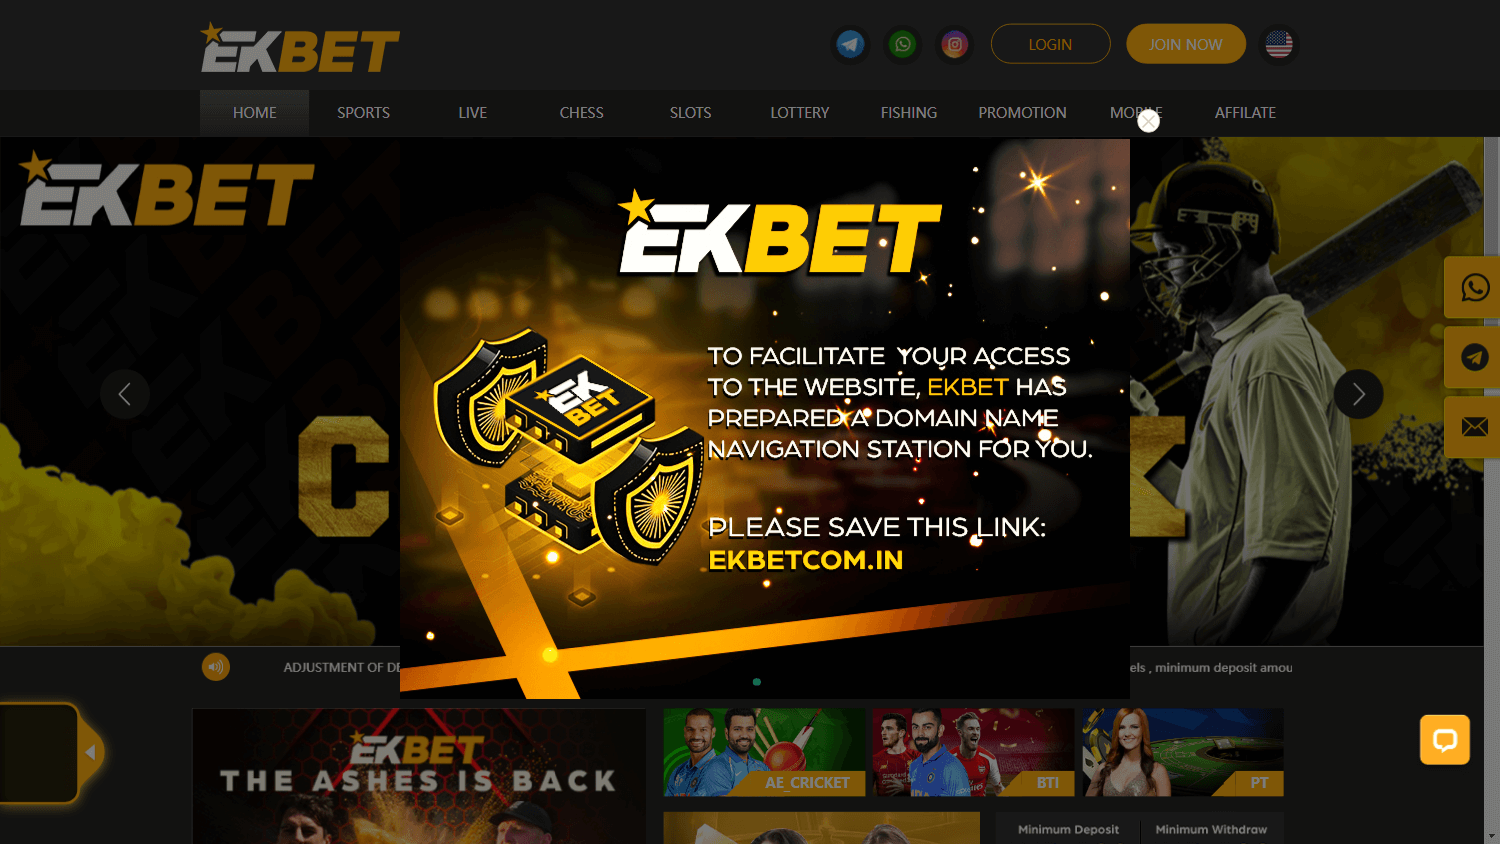 ekbet_casino_homepage_desktop